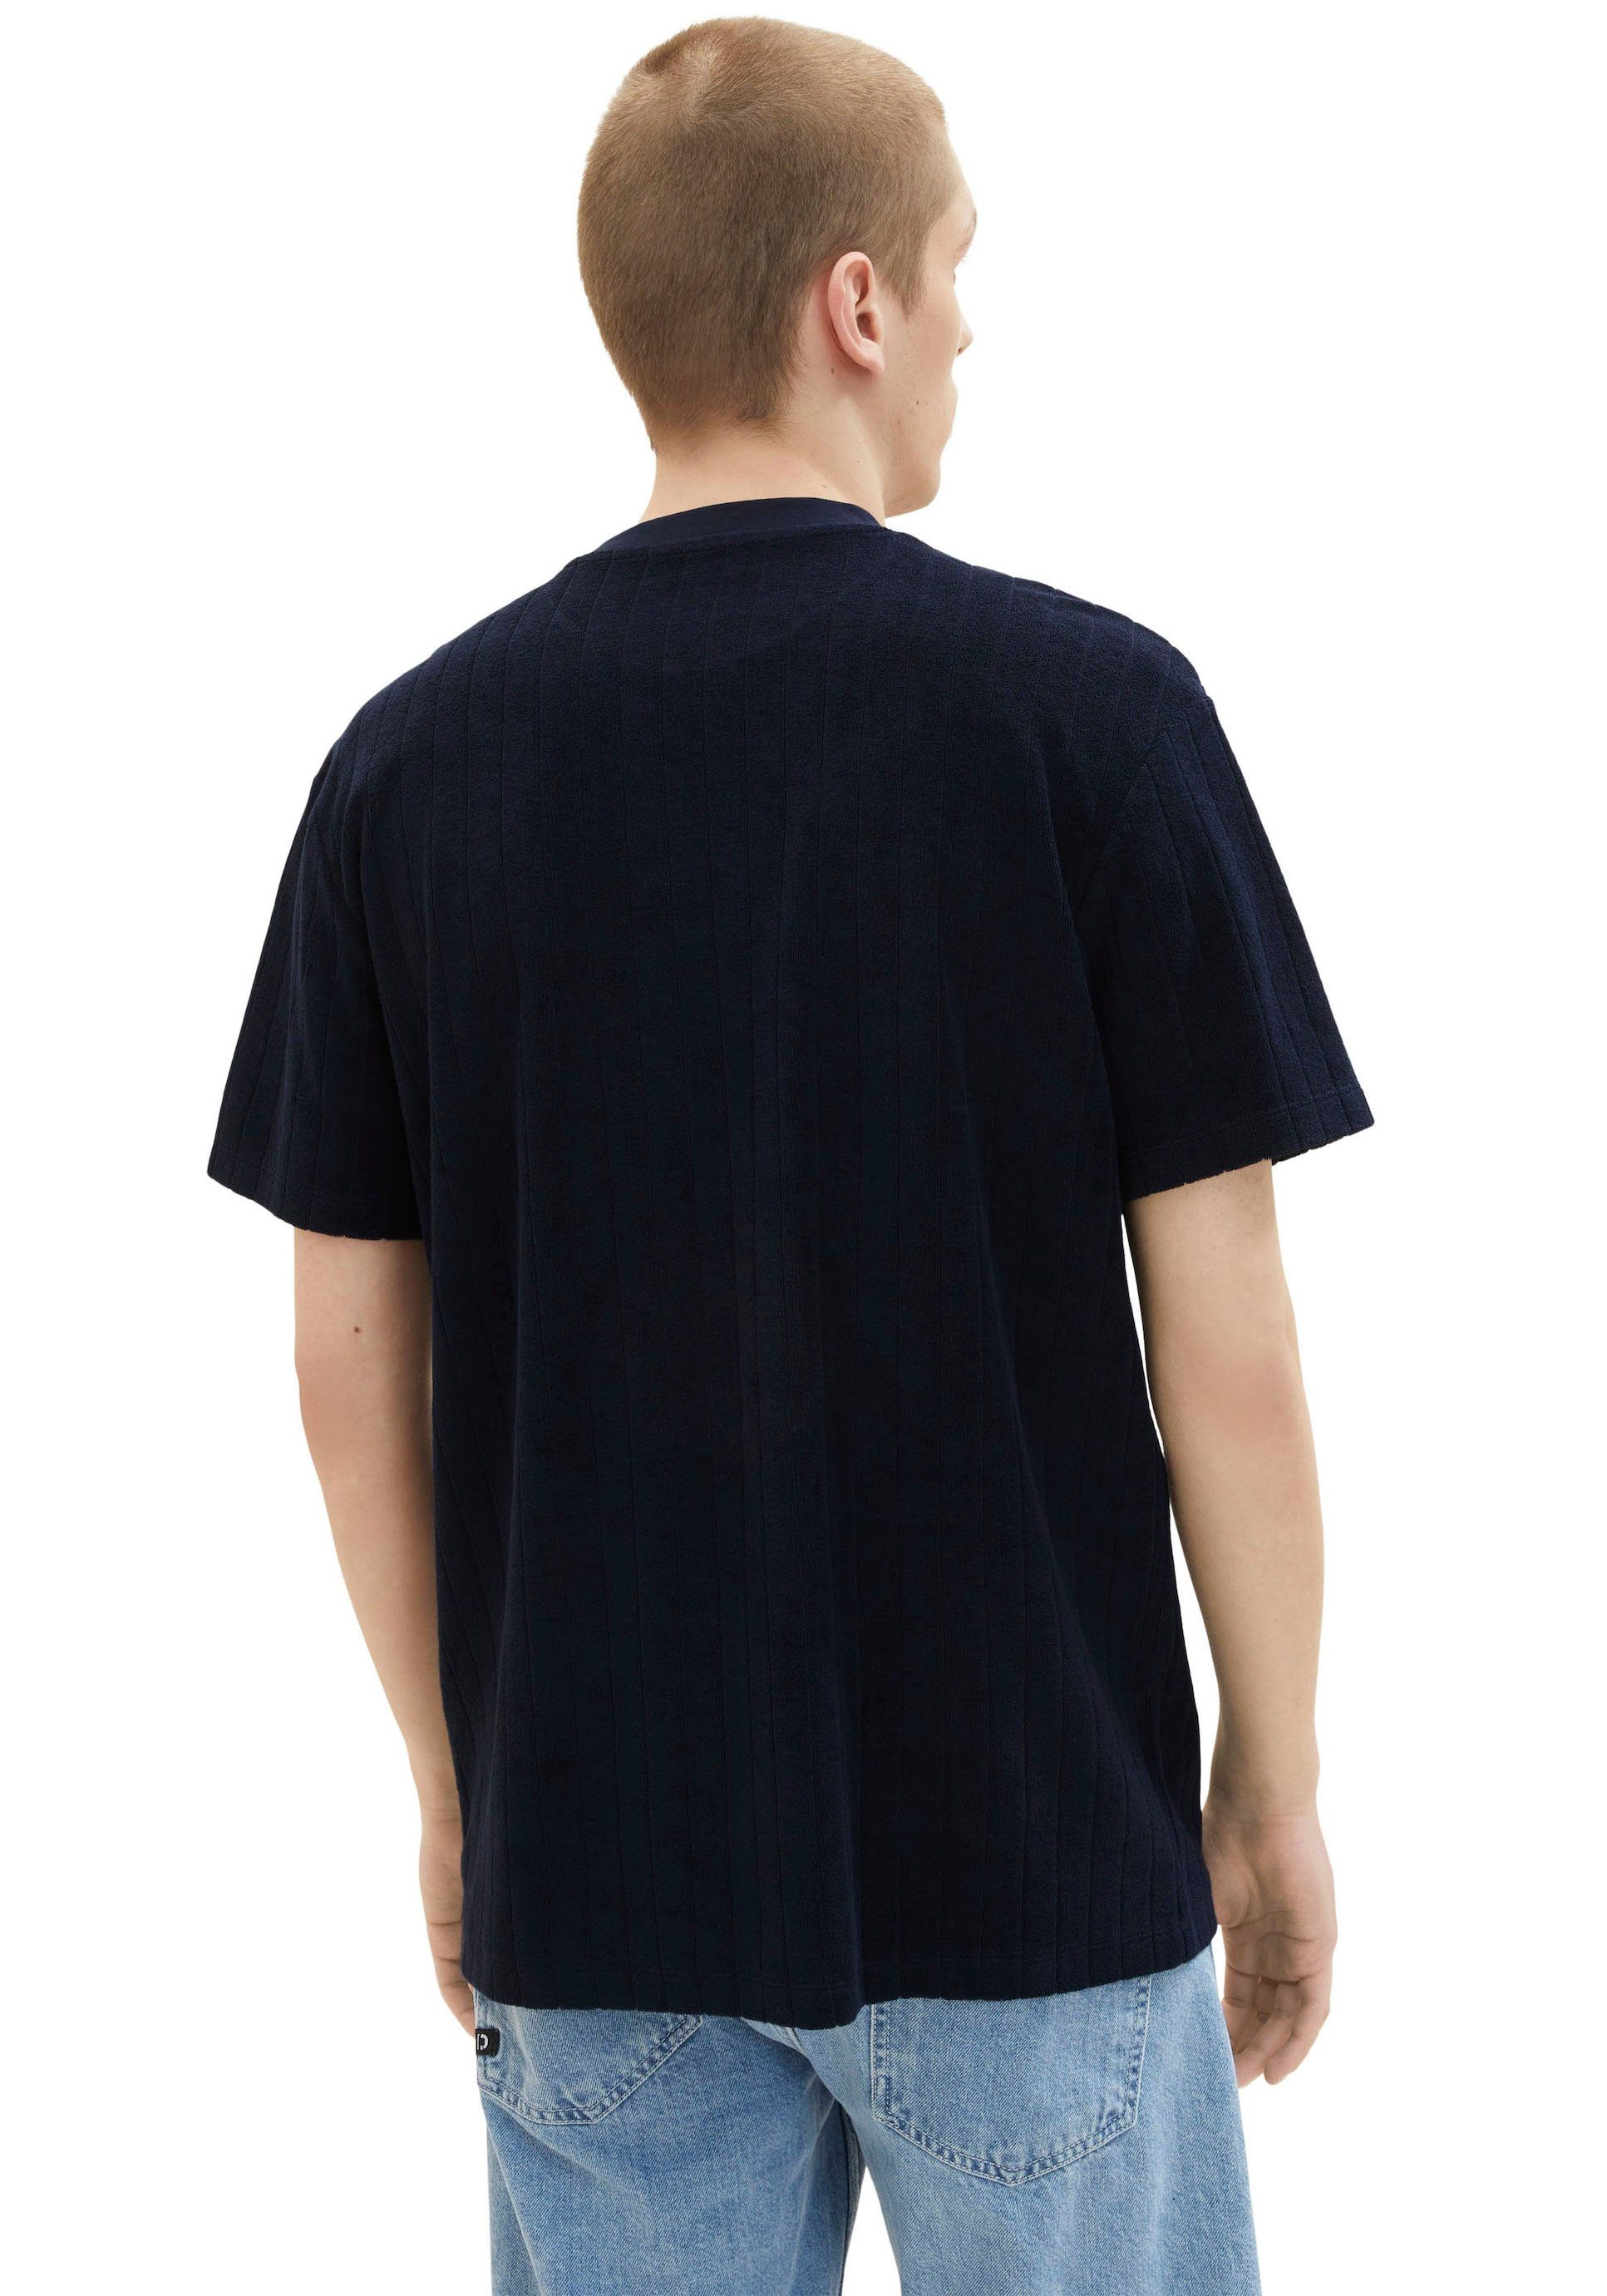 Denim TAILOR aus TOM navy strukturierter gemustert T-Shirt Sweatware